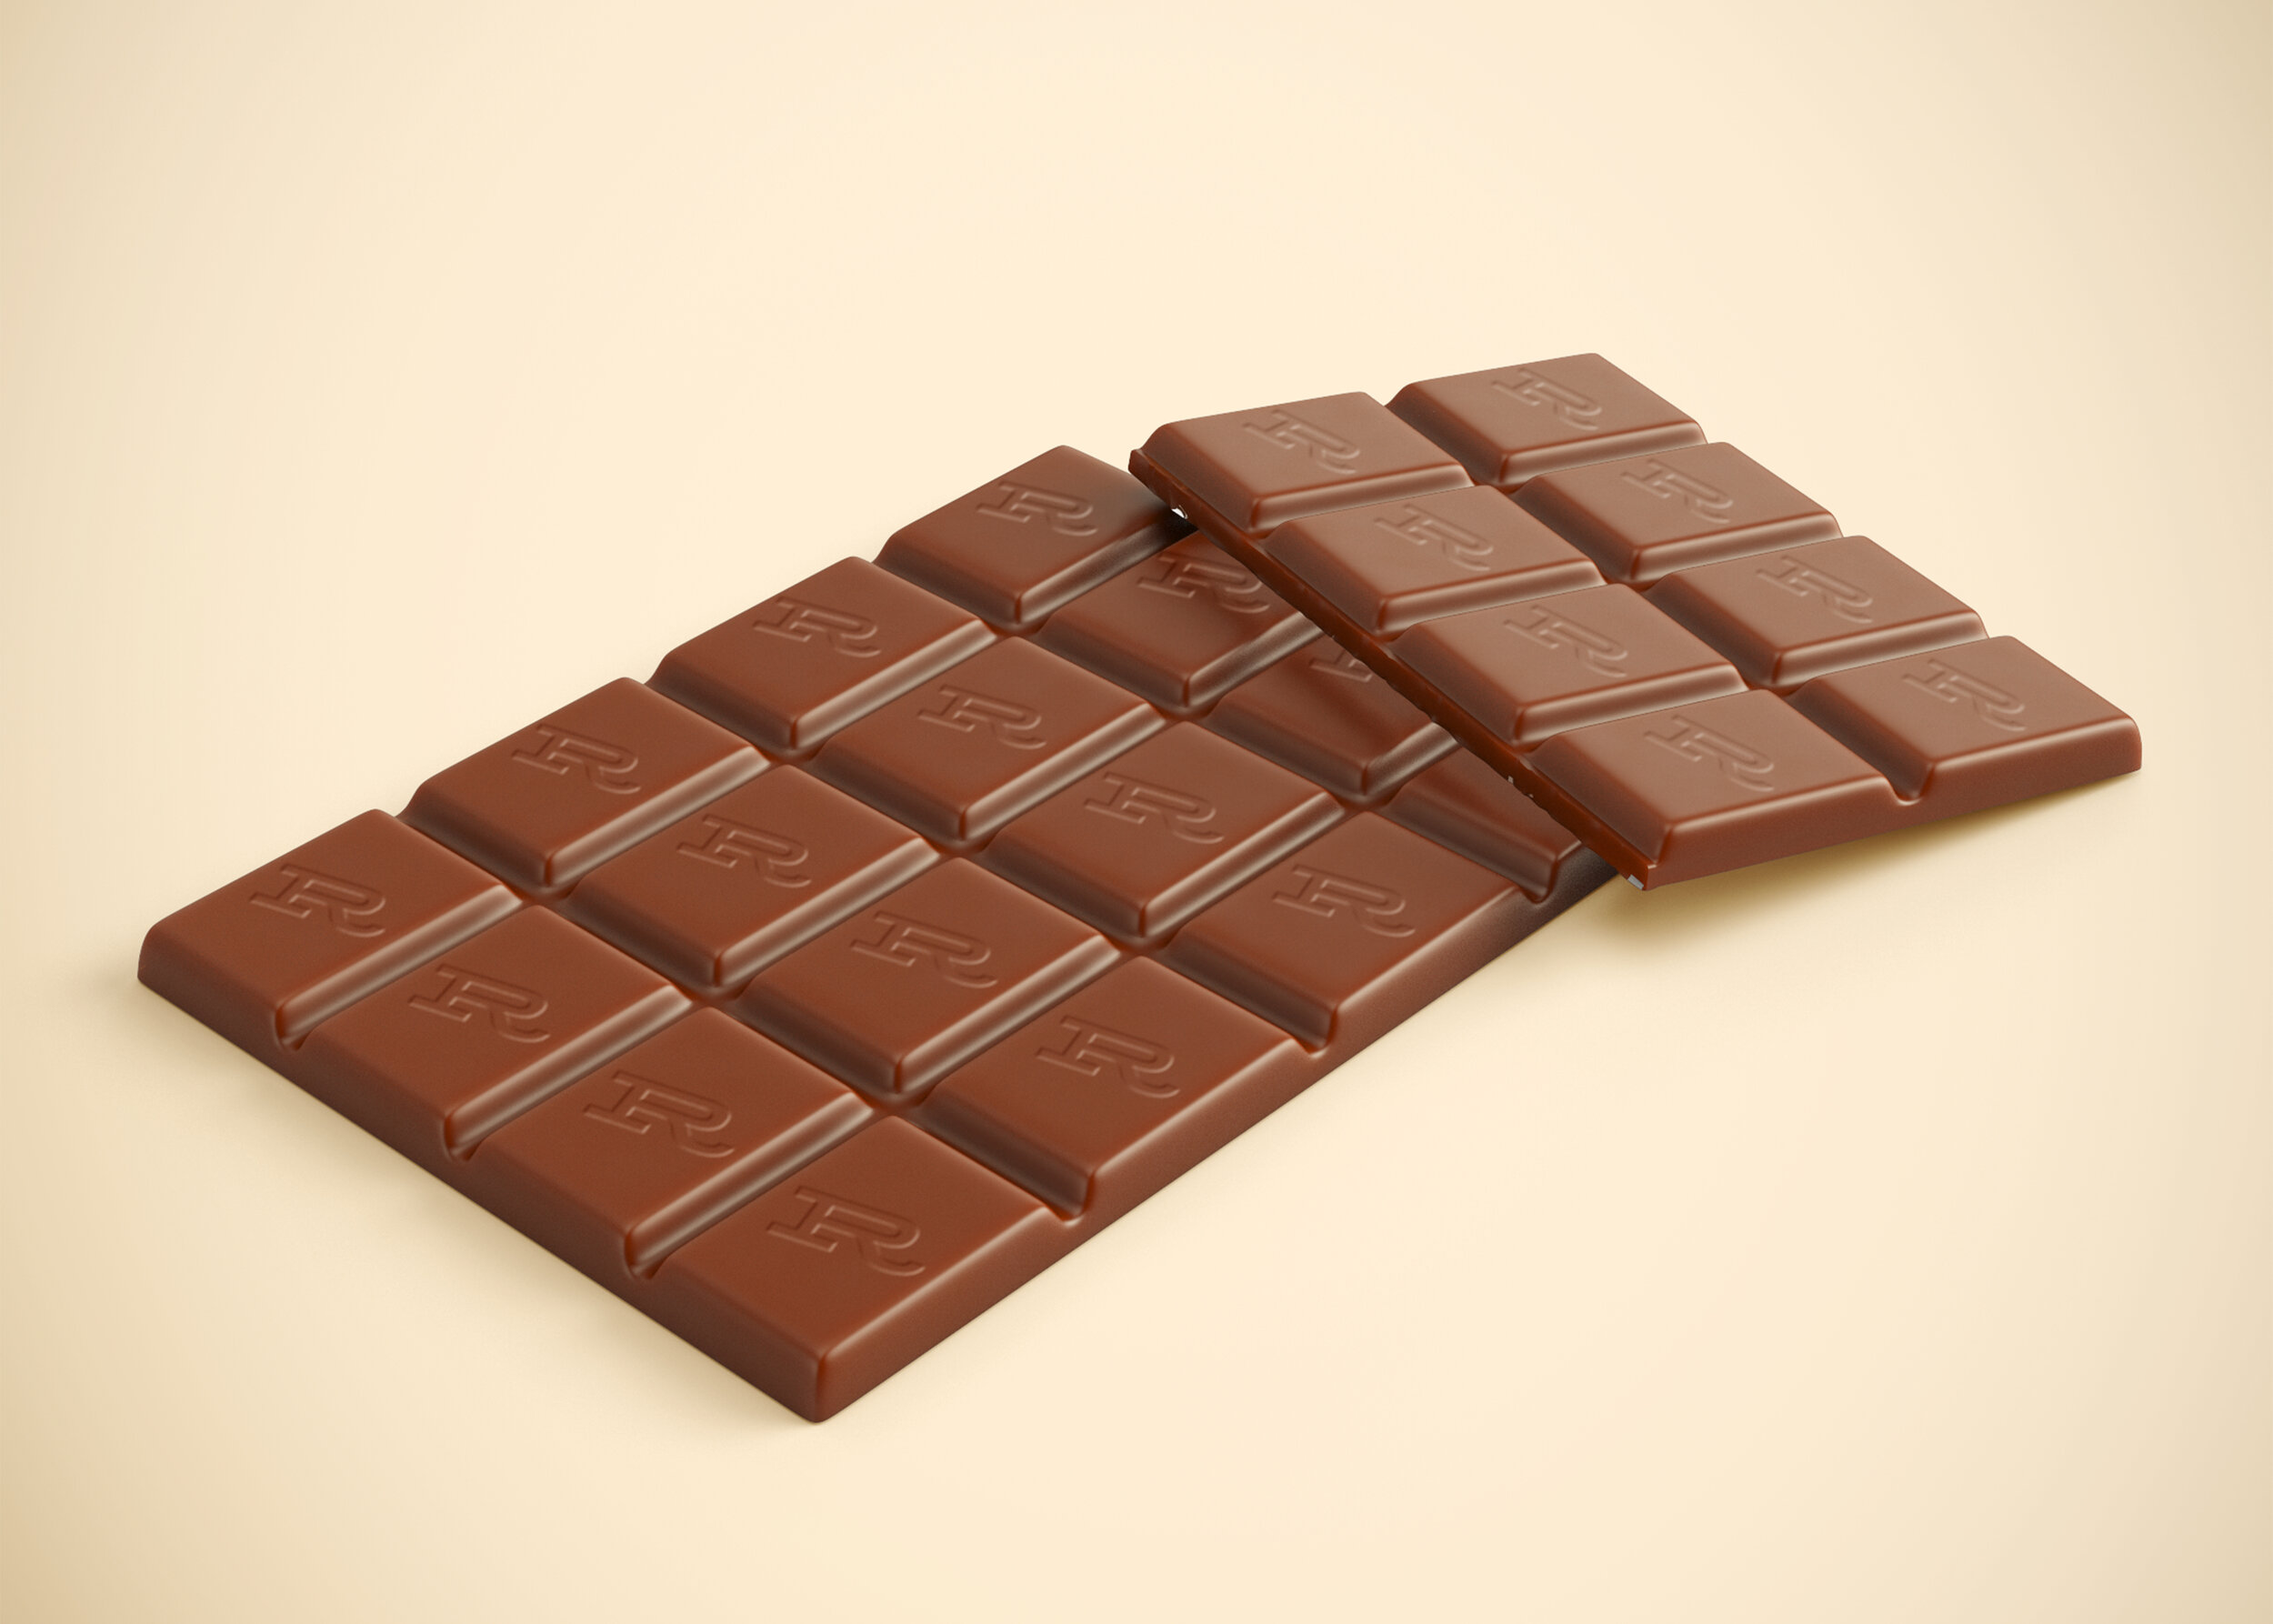 Обычную шоколадку. Шоколад плиточный мокап. Плитка шоколада мокап. Шоколадная плитка. Плитка шоколада в обертке.